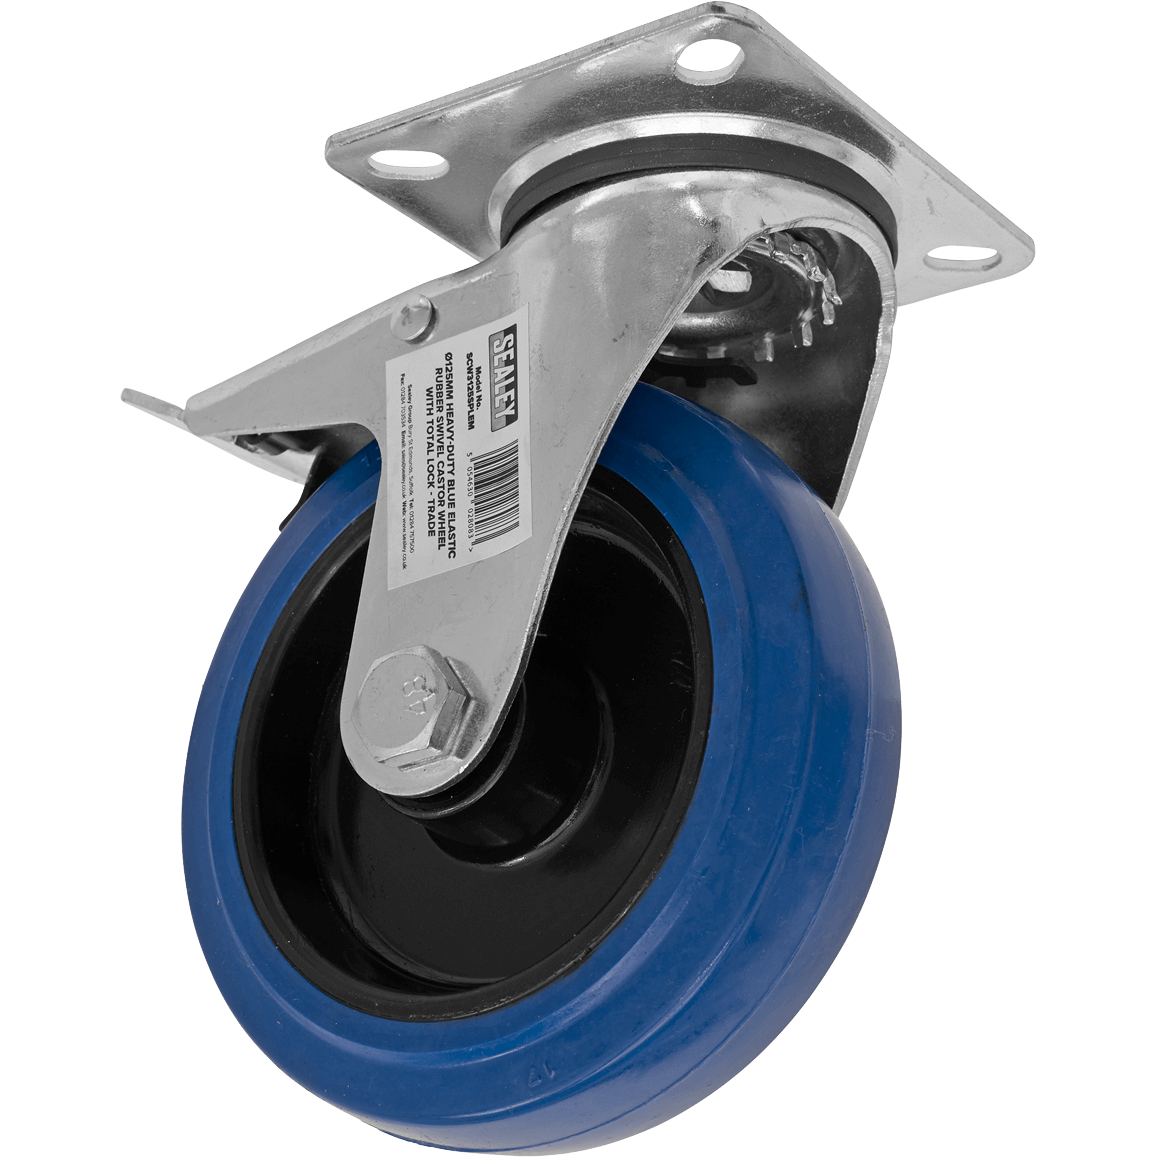 Sealey Heavy-Duty Blue Elastic Rubber Swivel Castor Wheel and Total Lock 125mm